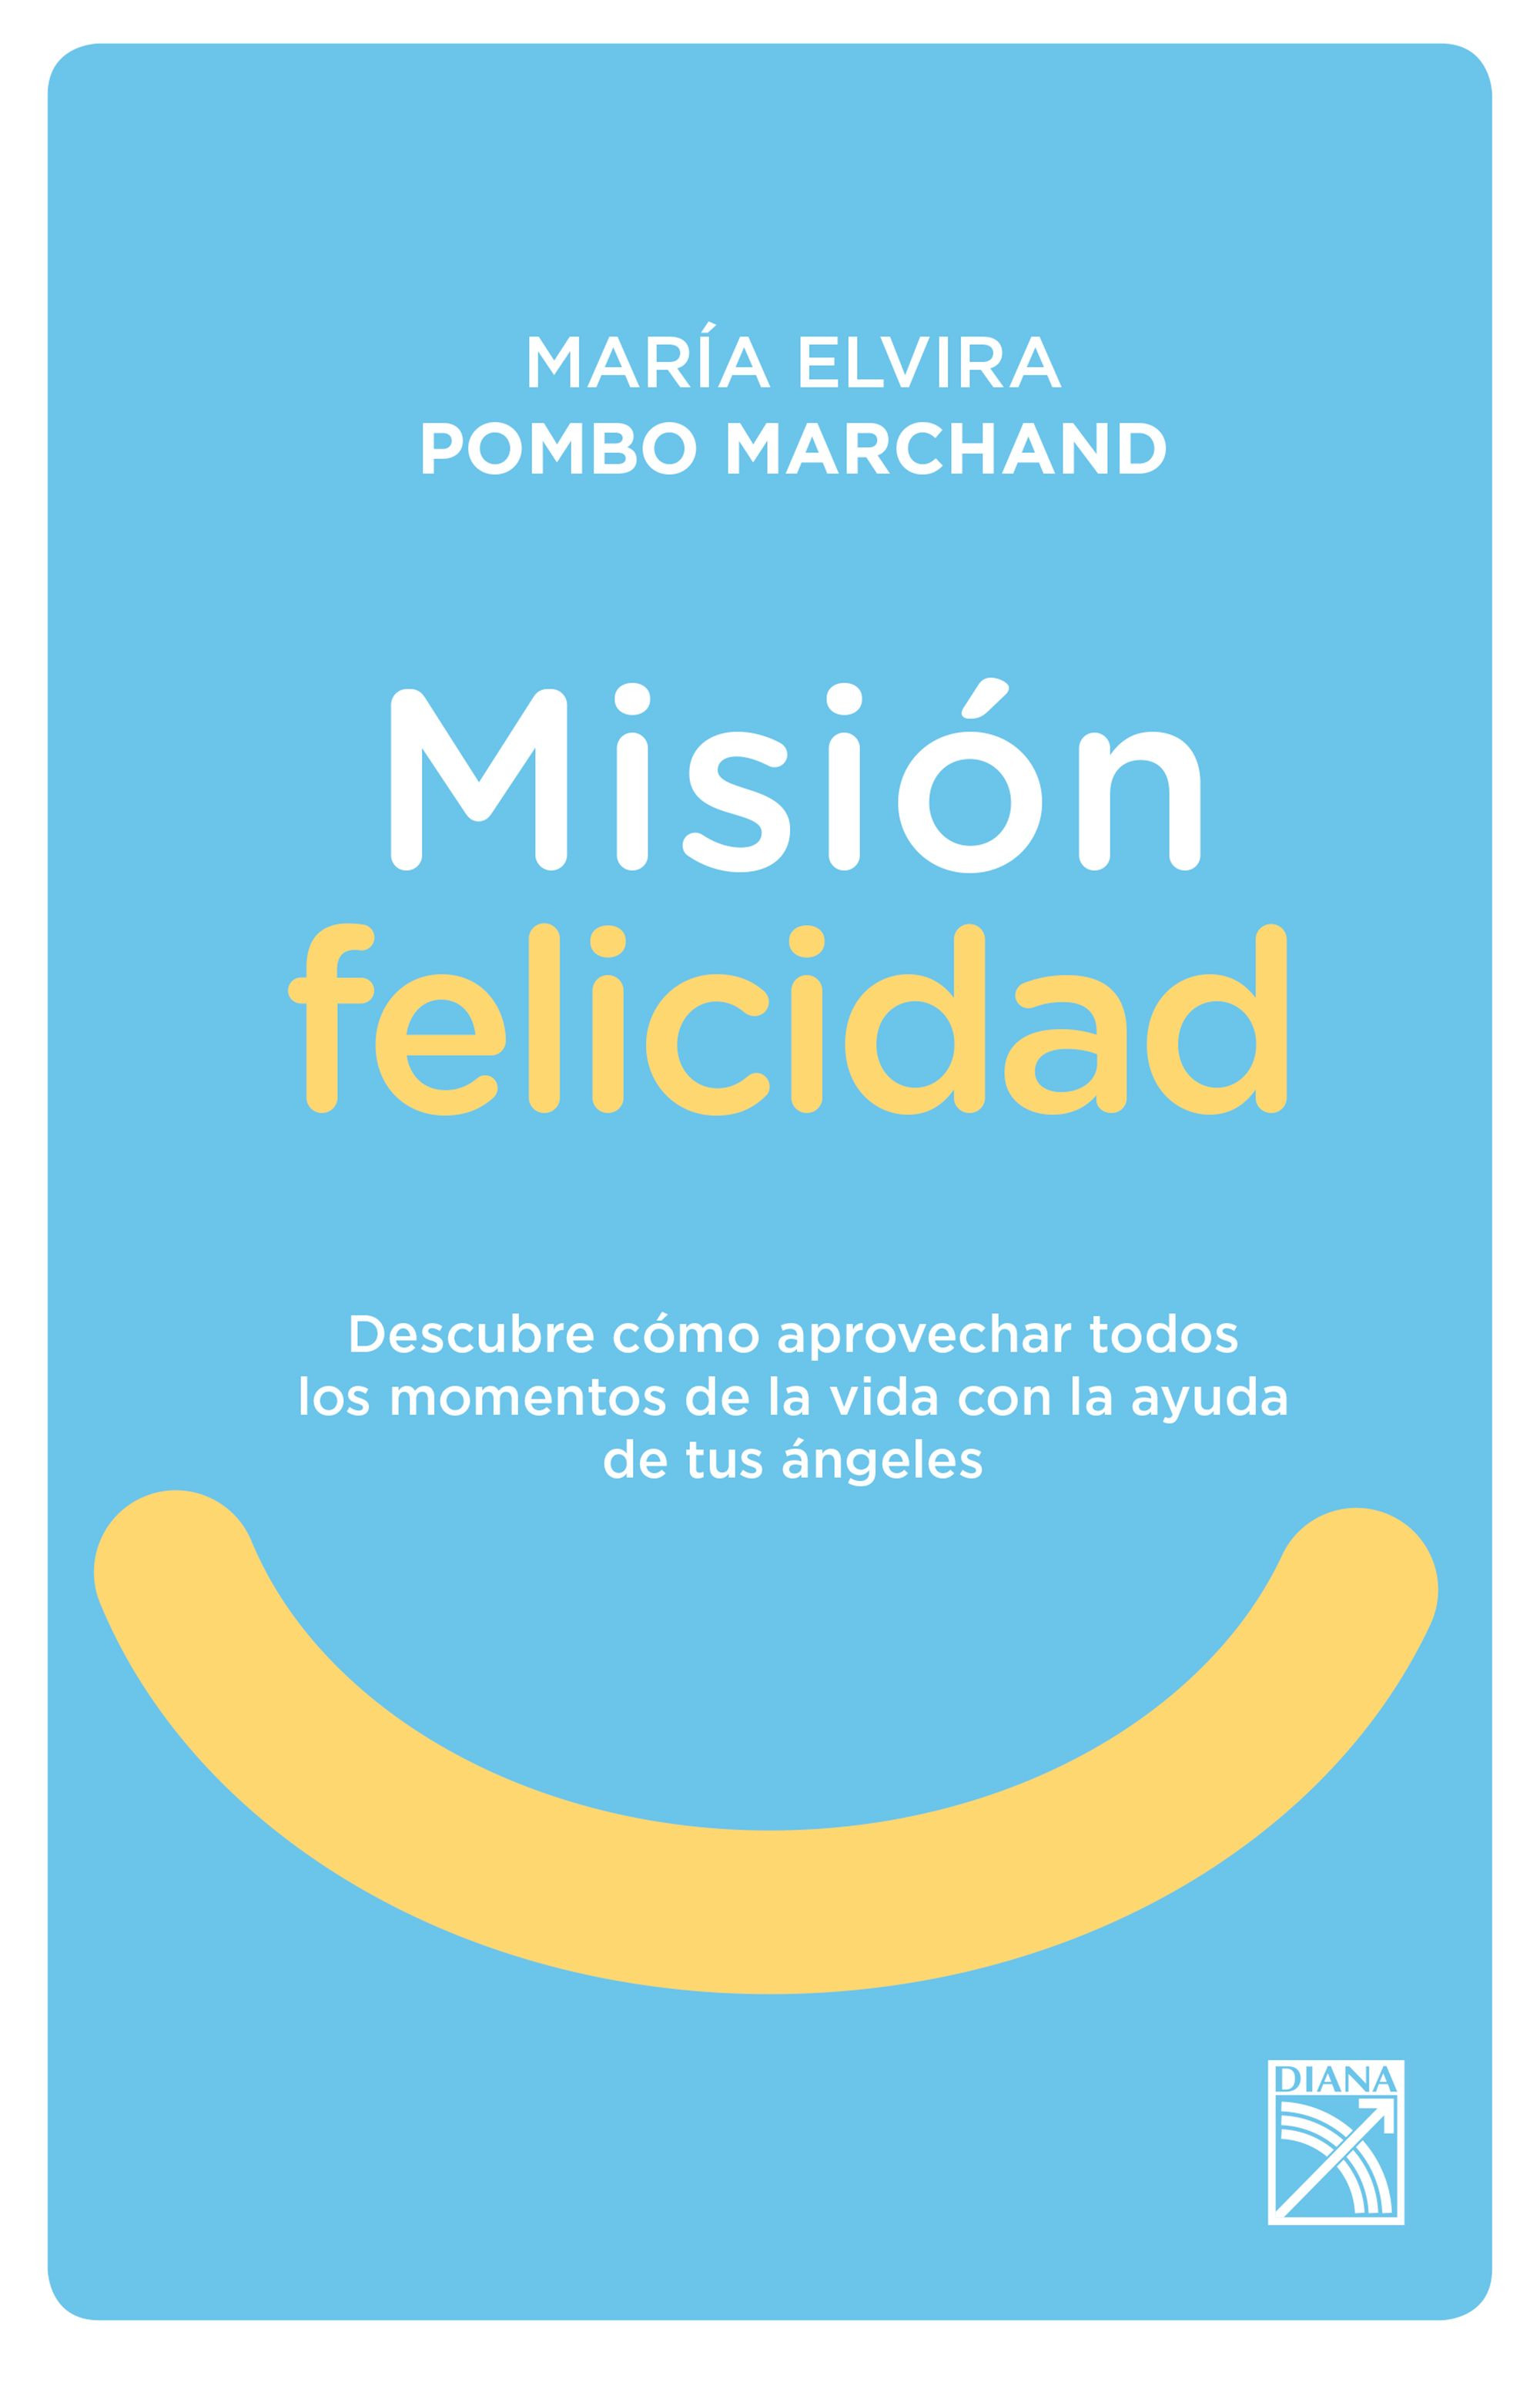 Imagen Misión Felicidad. María Elvira Pombo Marchand